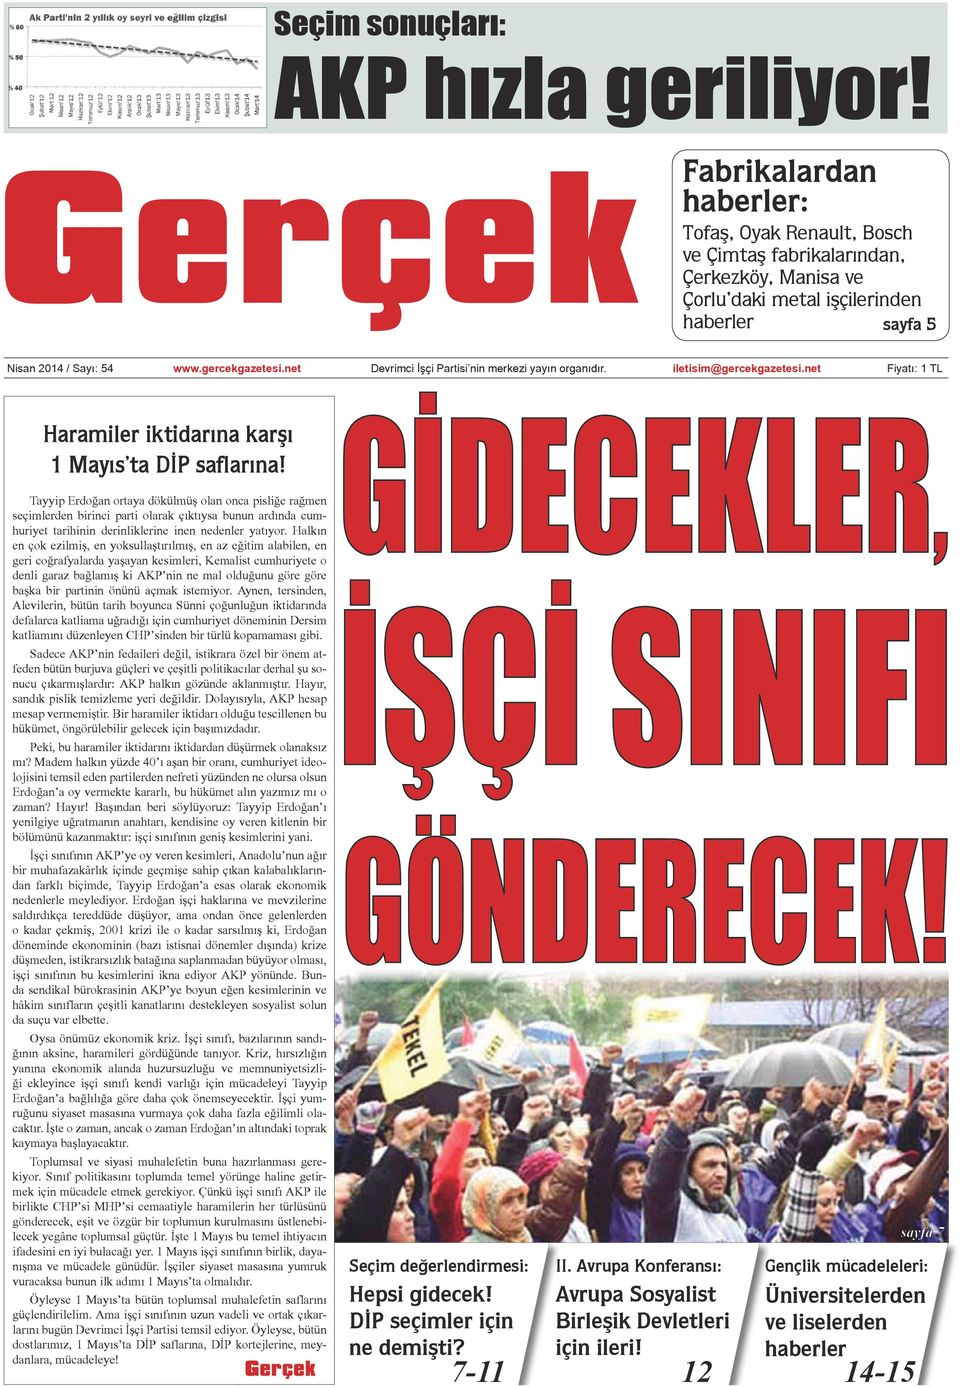 net Devrimci İşçi Partisi nin merkezi yayın organıdır. iletisim@gercekgazetesi.net Fiyatı: 1 TL Haramiler iktidarına karşı 1 Mayıs ta DİP saflarına!